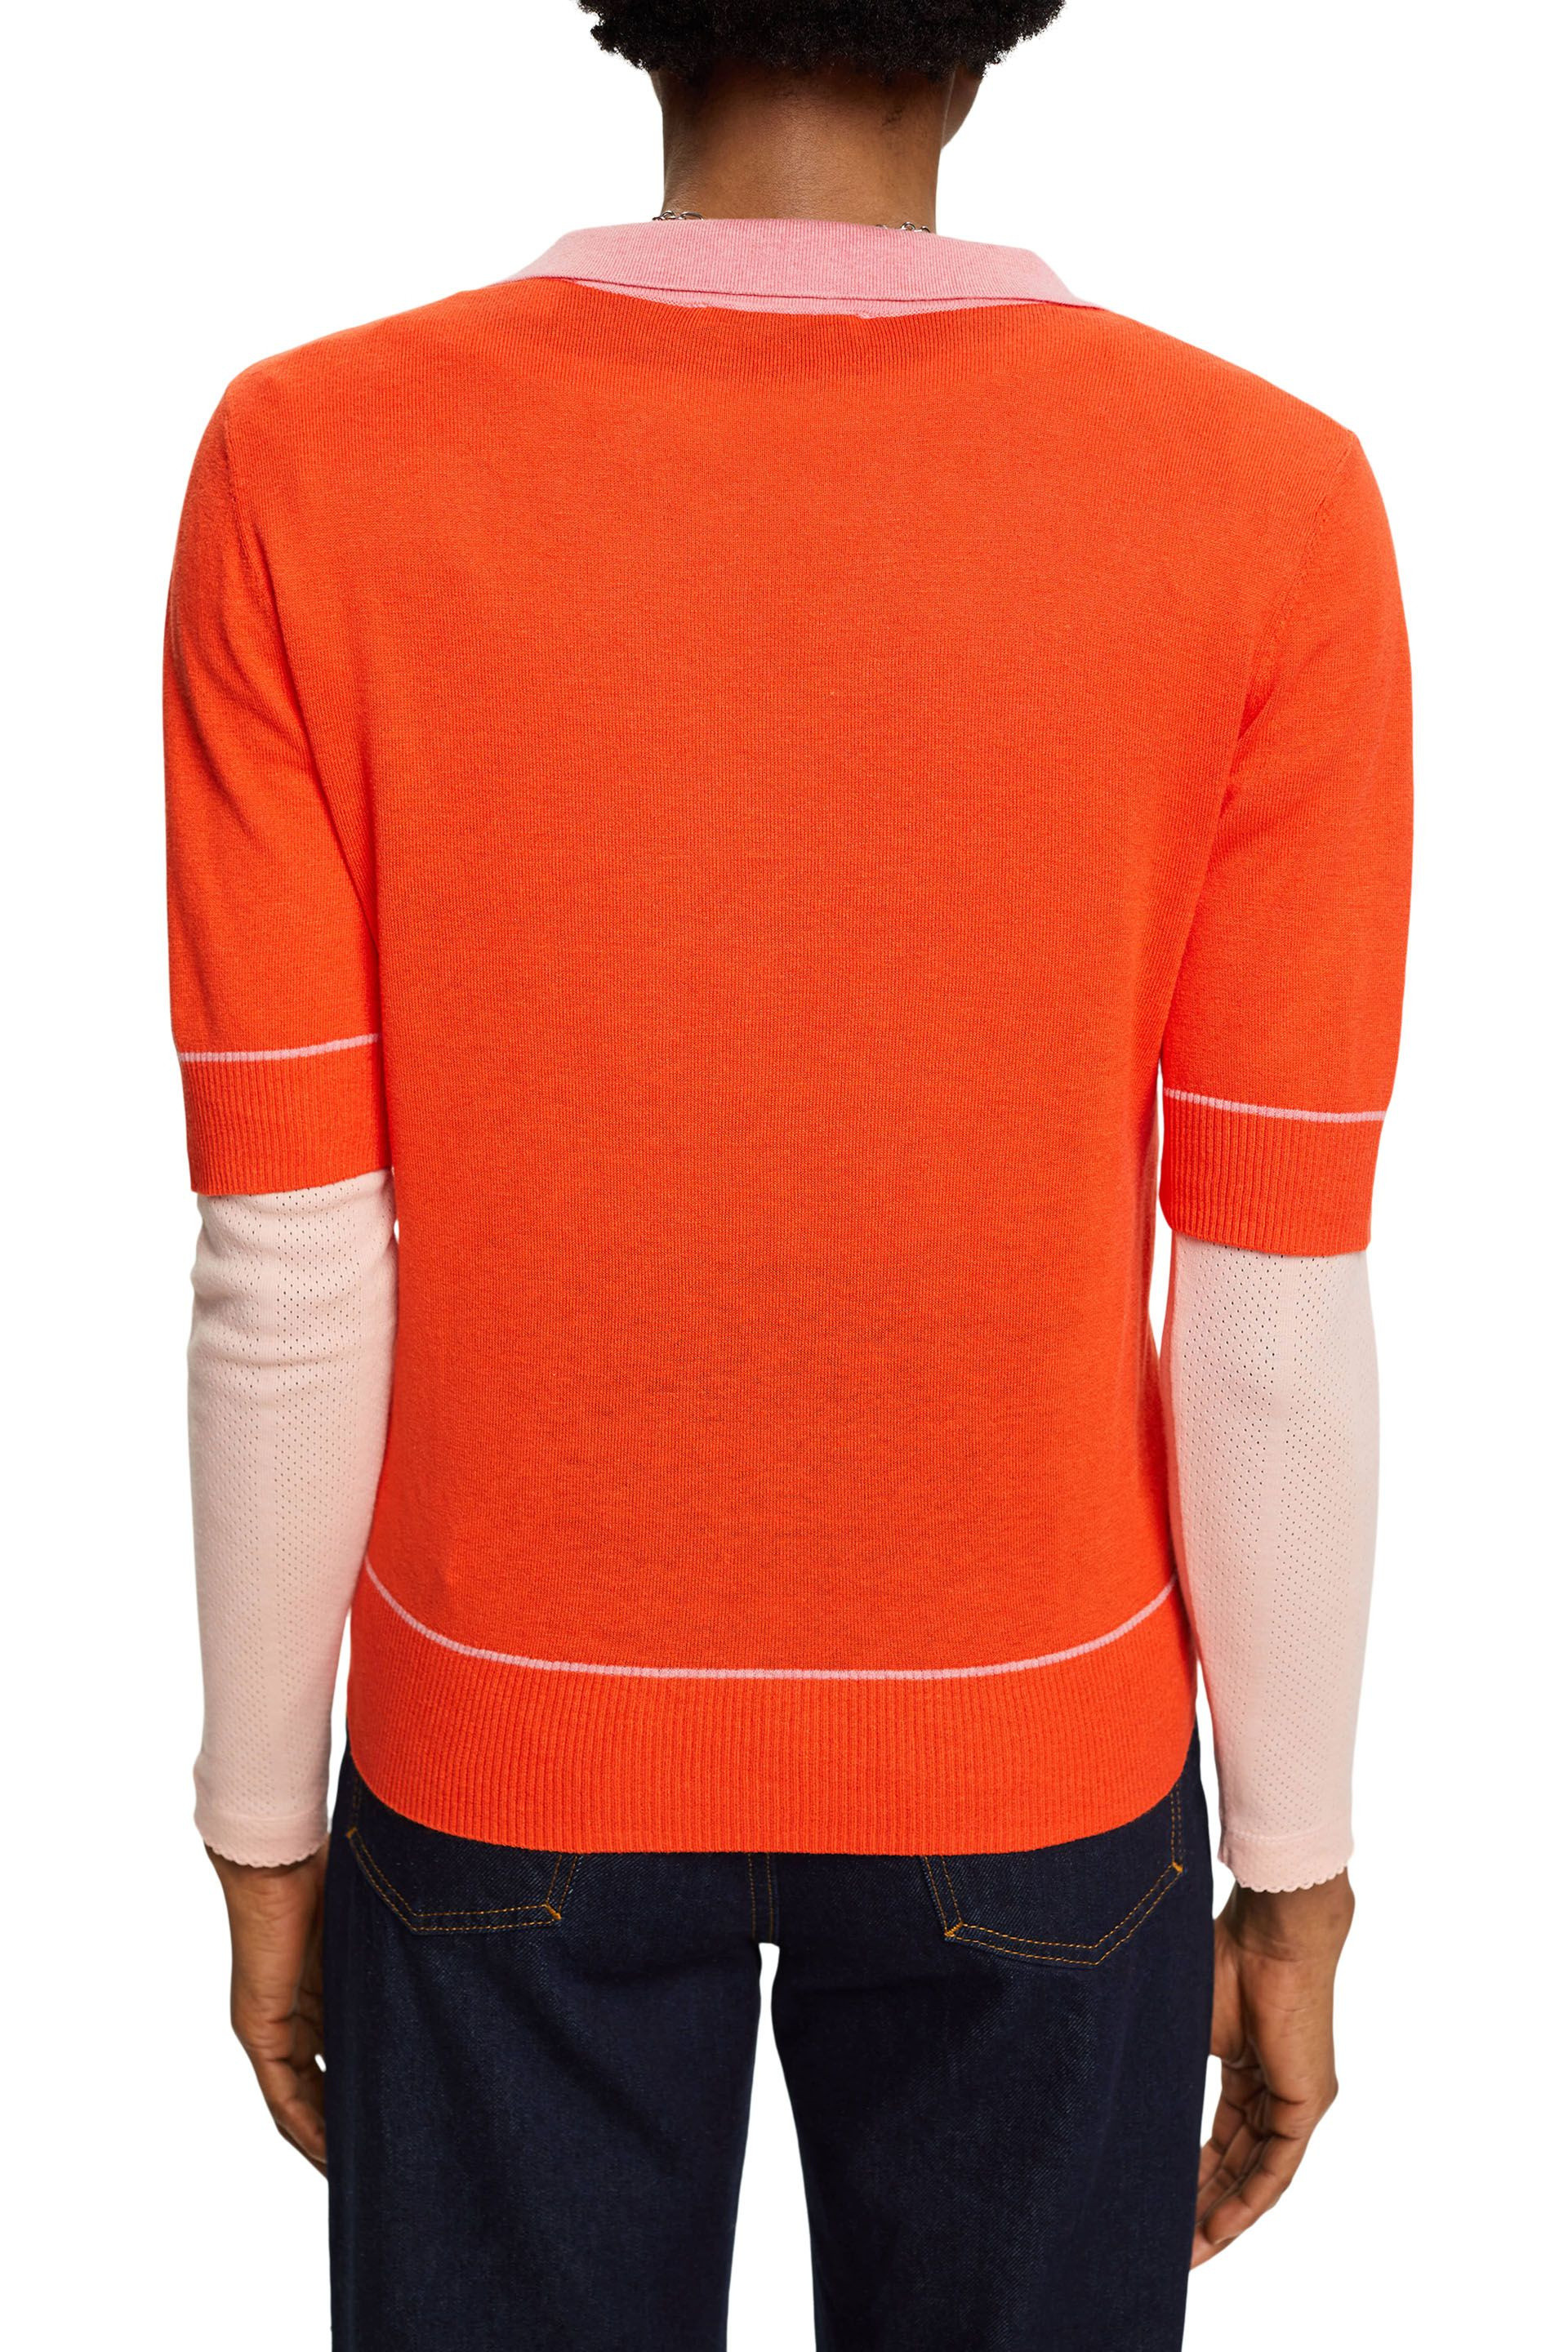 Esprit - Pullover con scollo a V, Arancione, large image number 3